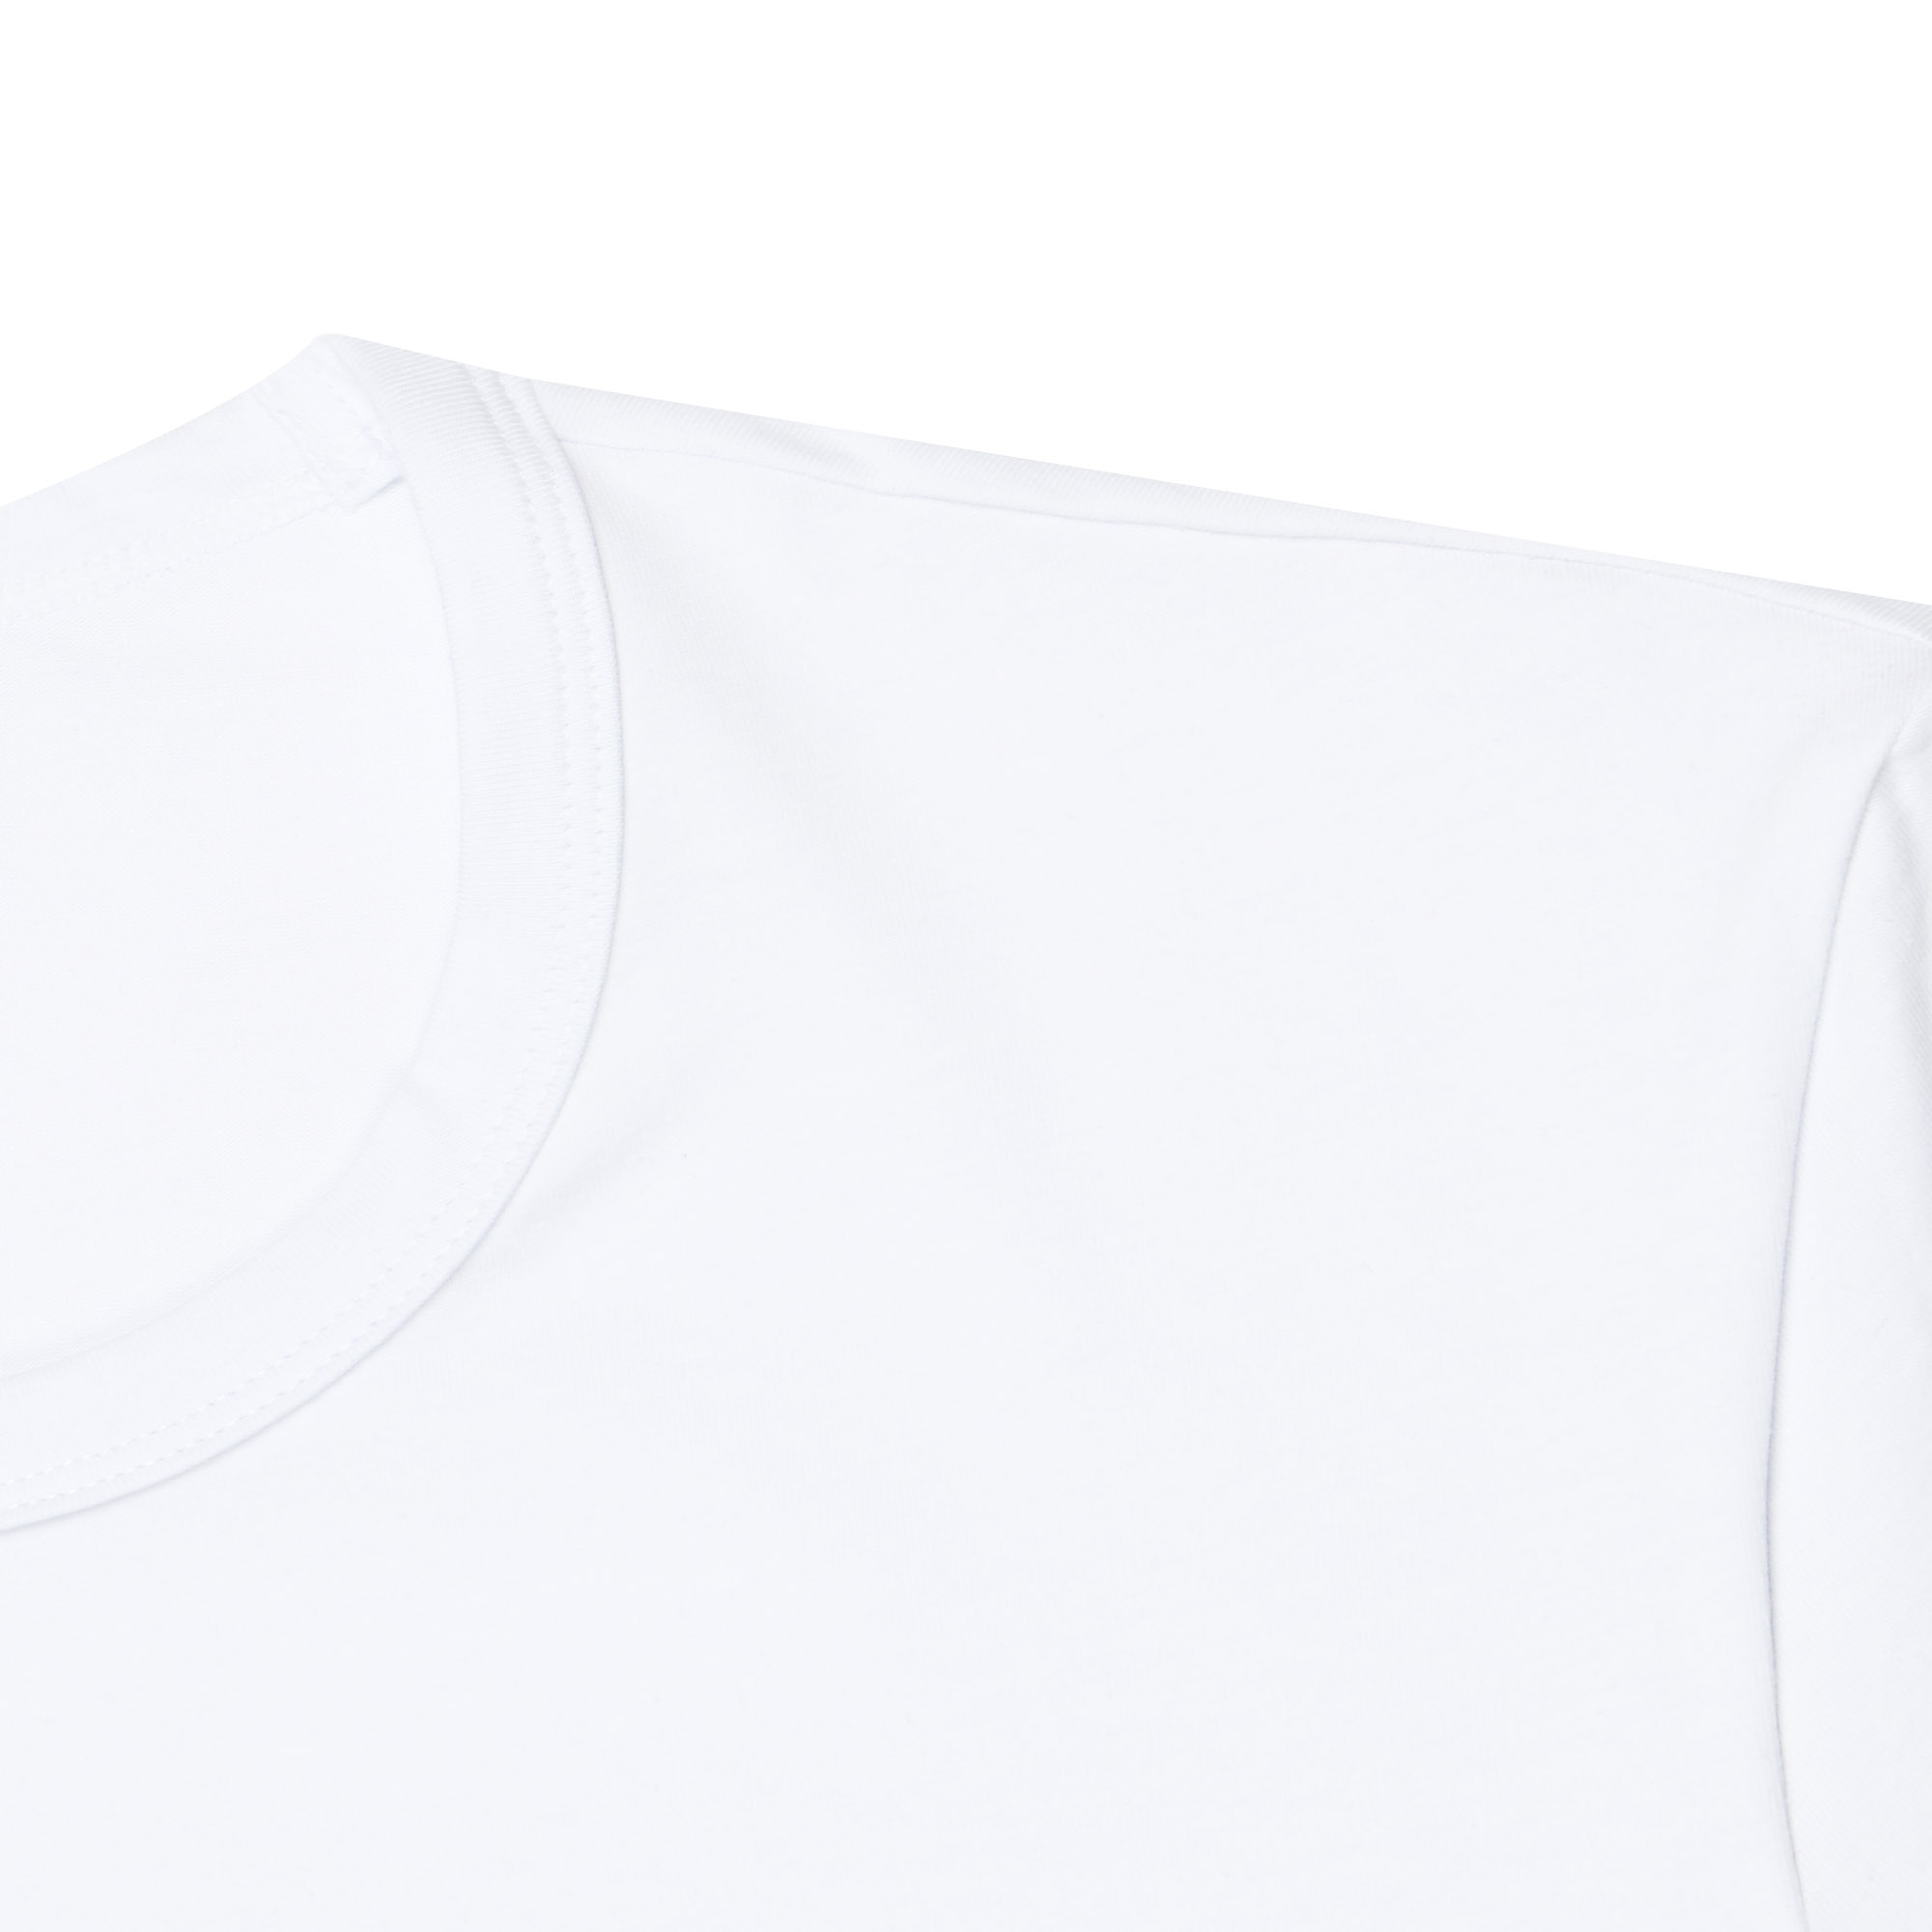 Мужская футболка Pantelemone MF-914 46 белая, цвет белый, размер 46 - фото 2